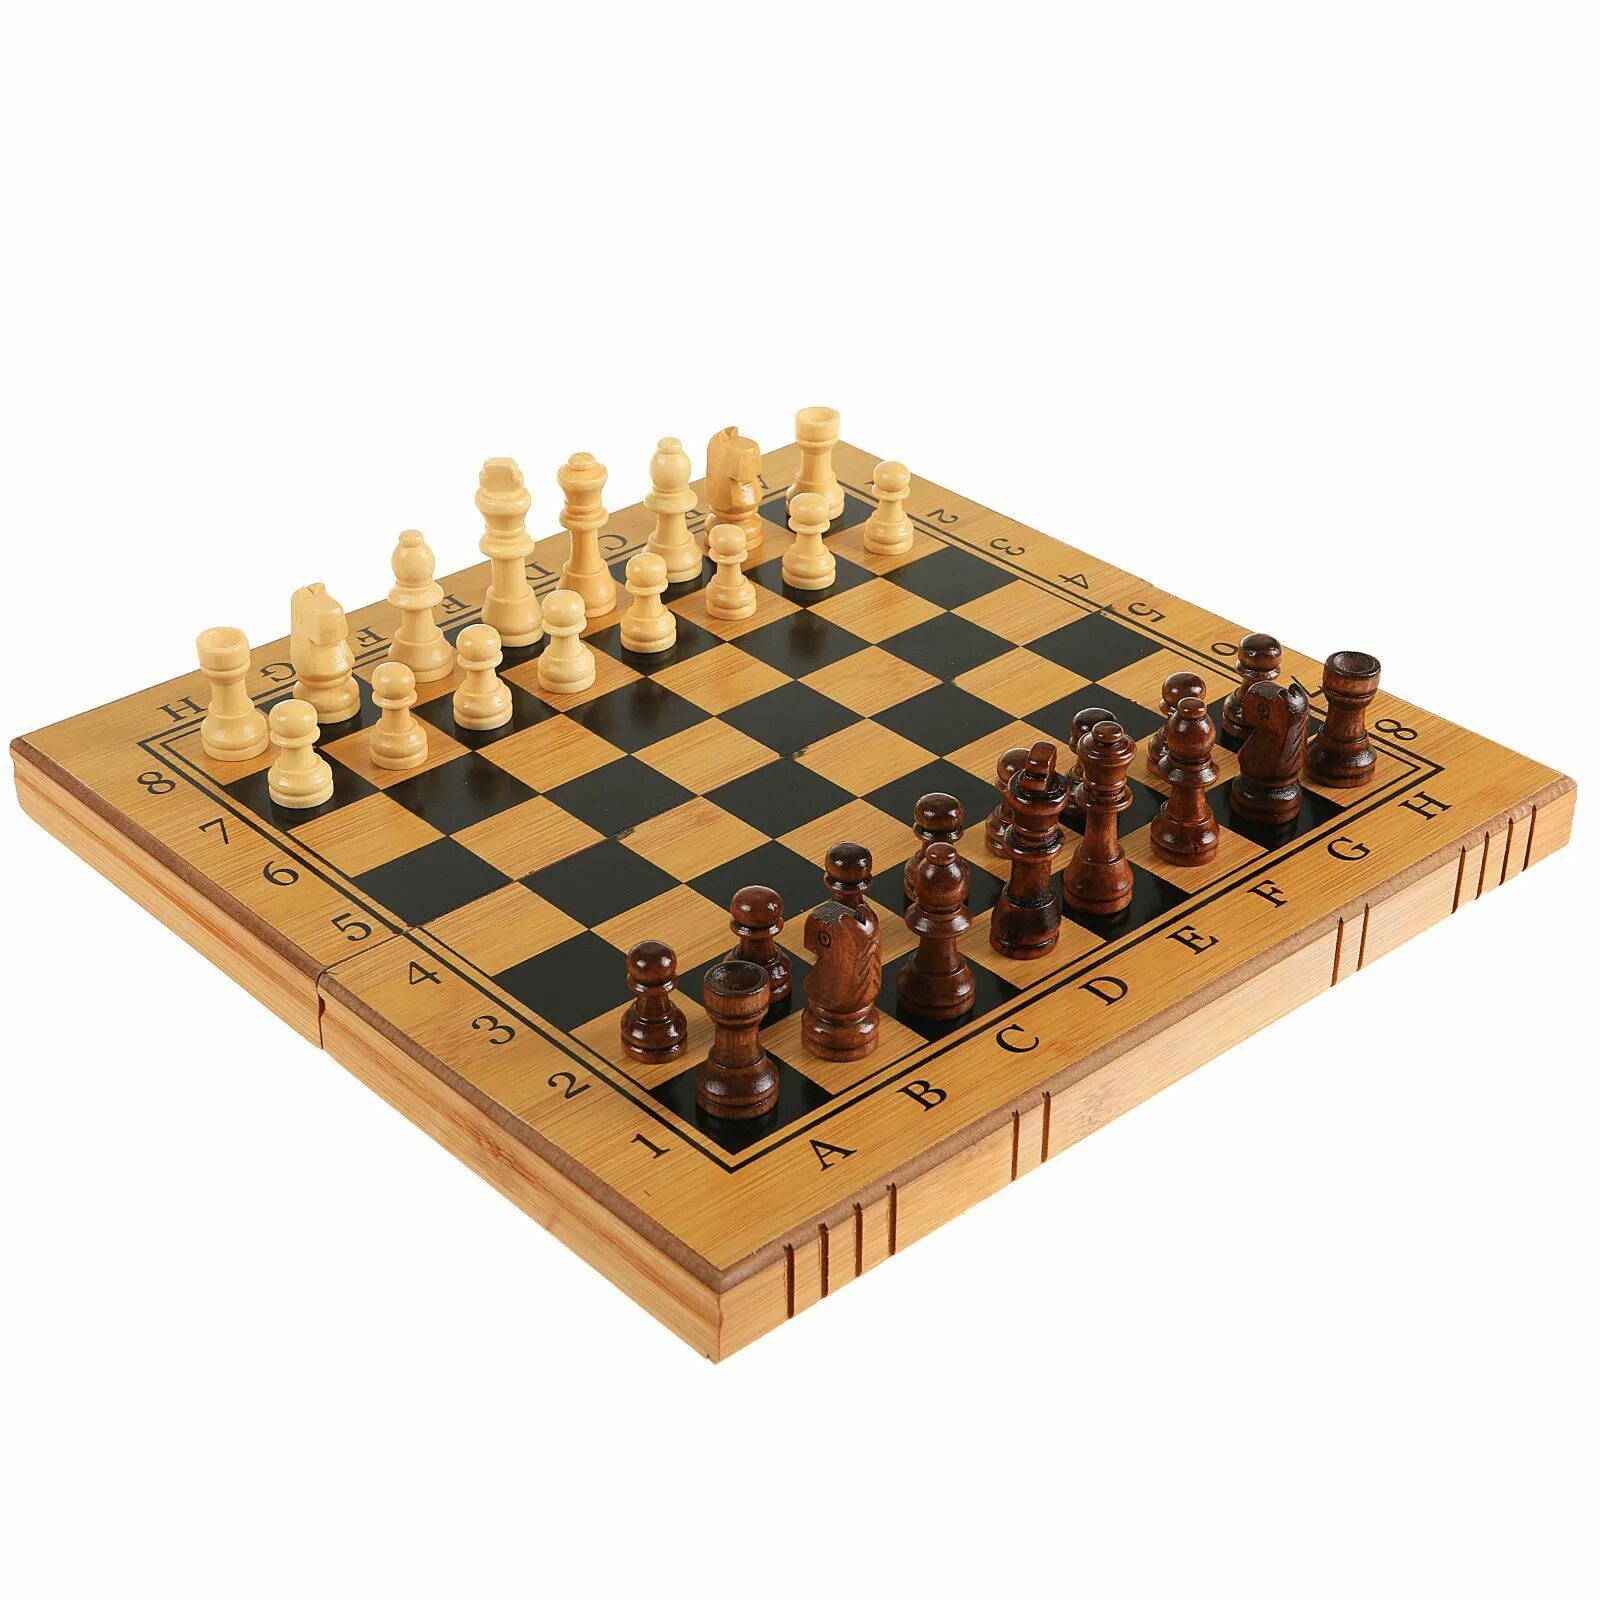 Нарды шашки играть. Набор 3в1 (шахматы, шашки, нарды) в2412. Набор игр 3 в 1 (шашки, шахматы, нарды) дерево, 34х34 см. Рыжий кот 3в1 шашки шахматы. Набор игр 3 в 1 шашки шахматы нарды.